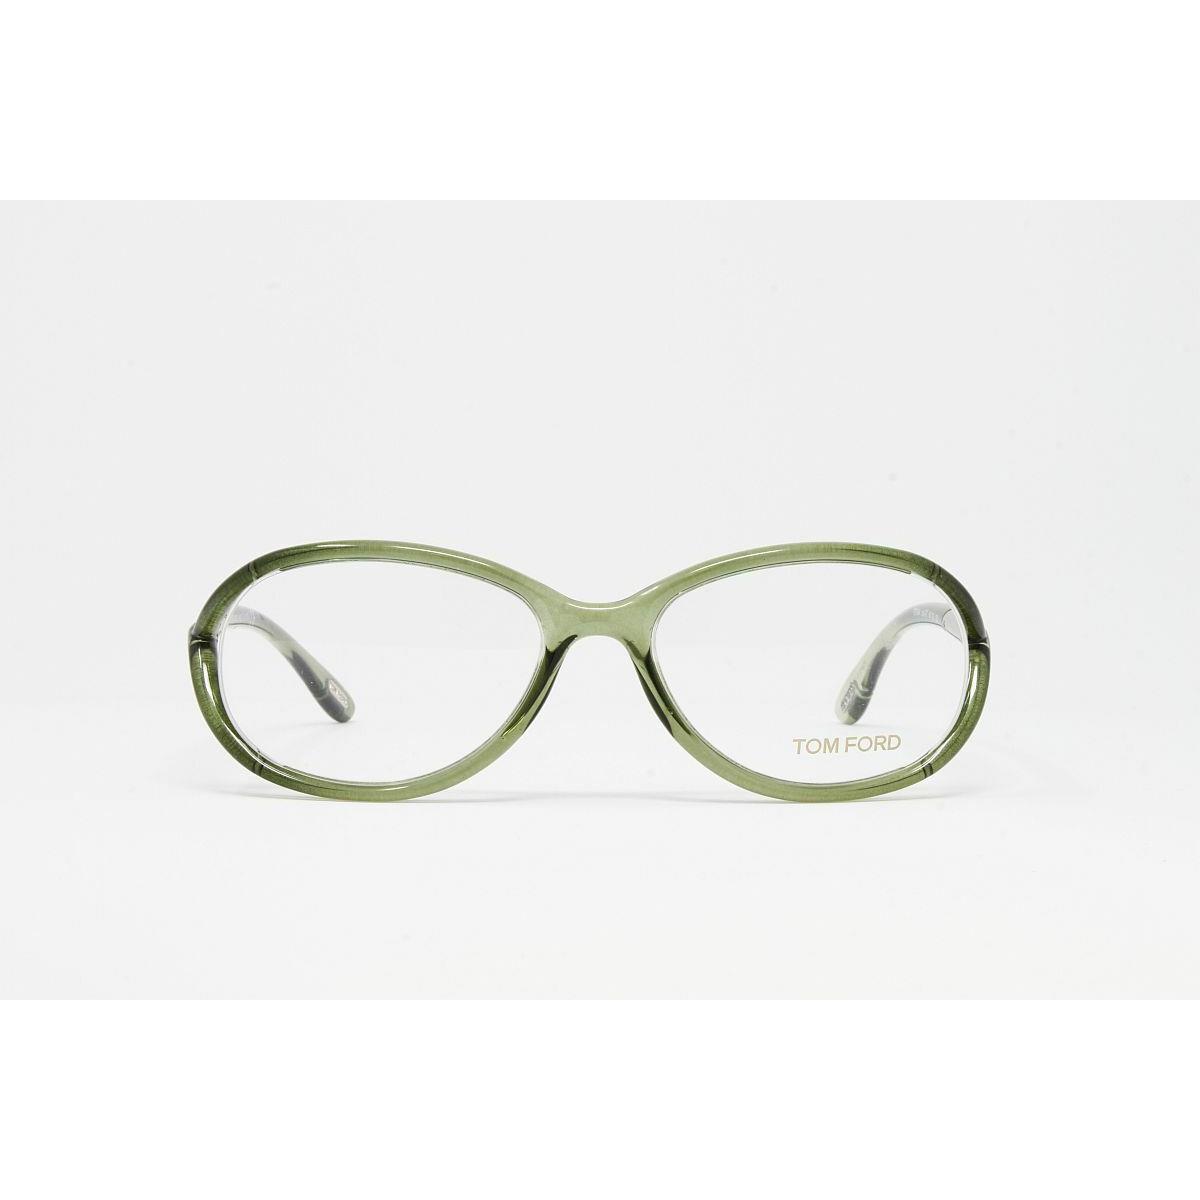 Tom Ford eyeglasses Color - Green Frame 0